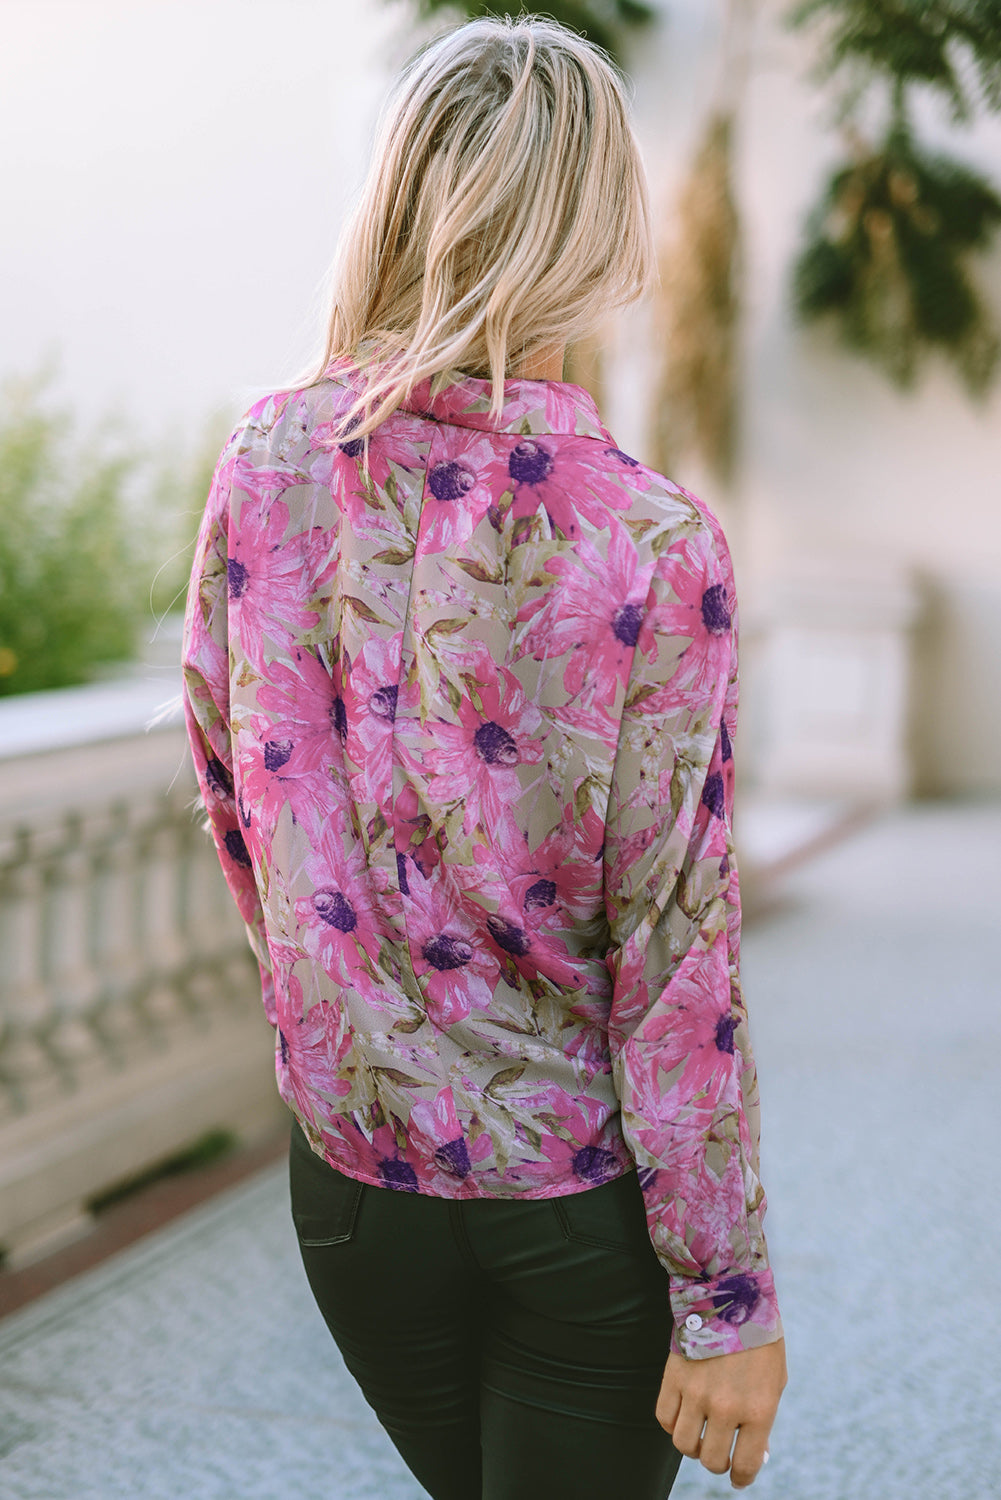 Vijolična srajca z napihnjenimi gumbi in cvetličnim potiskom